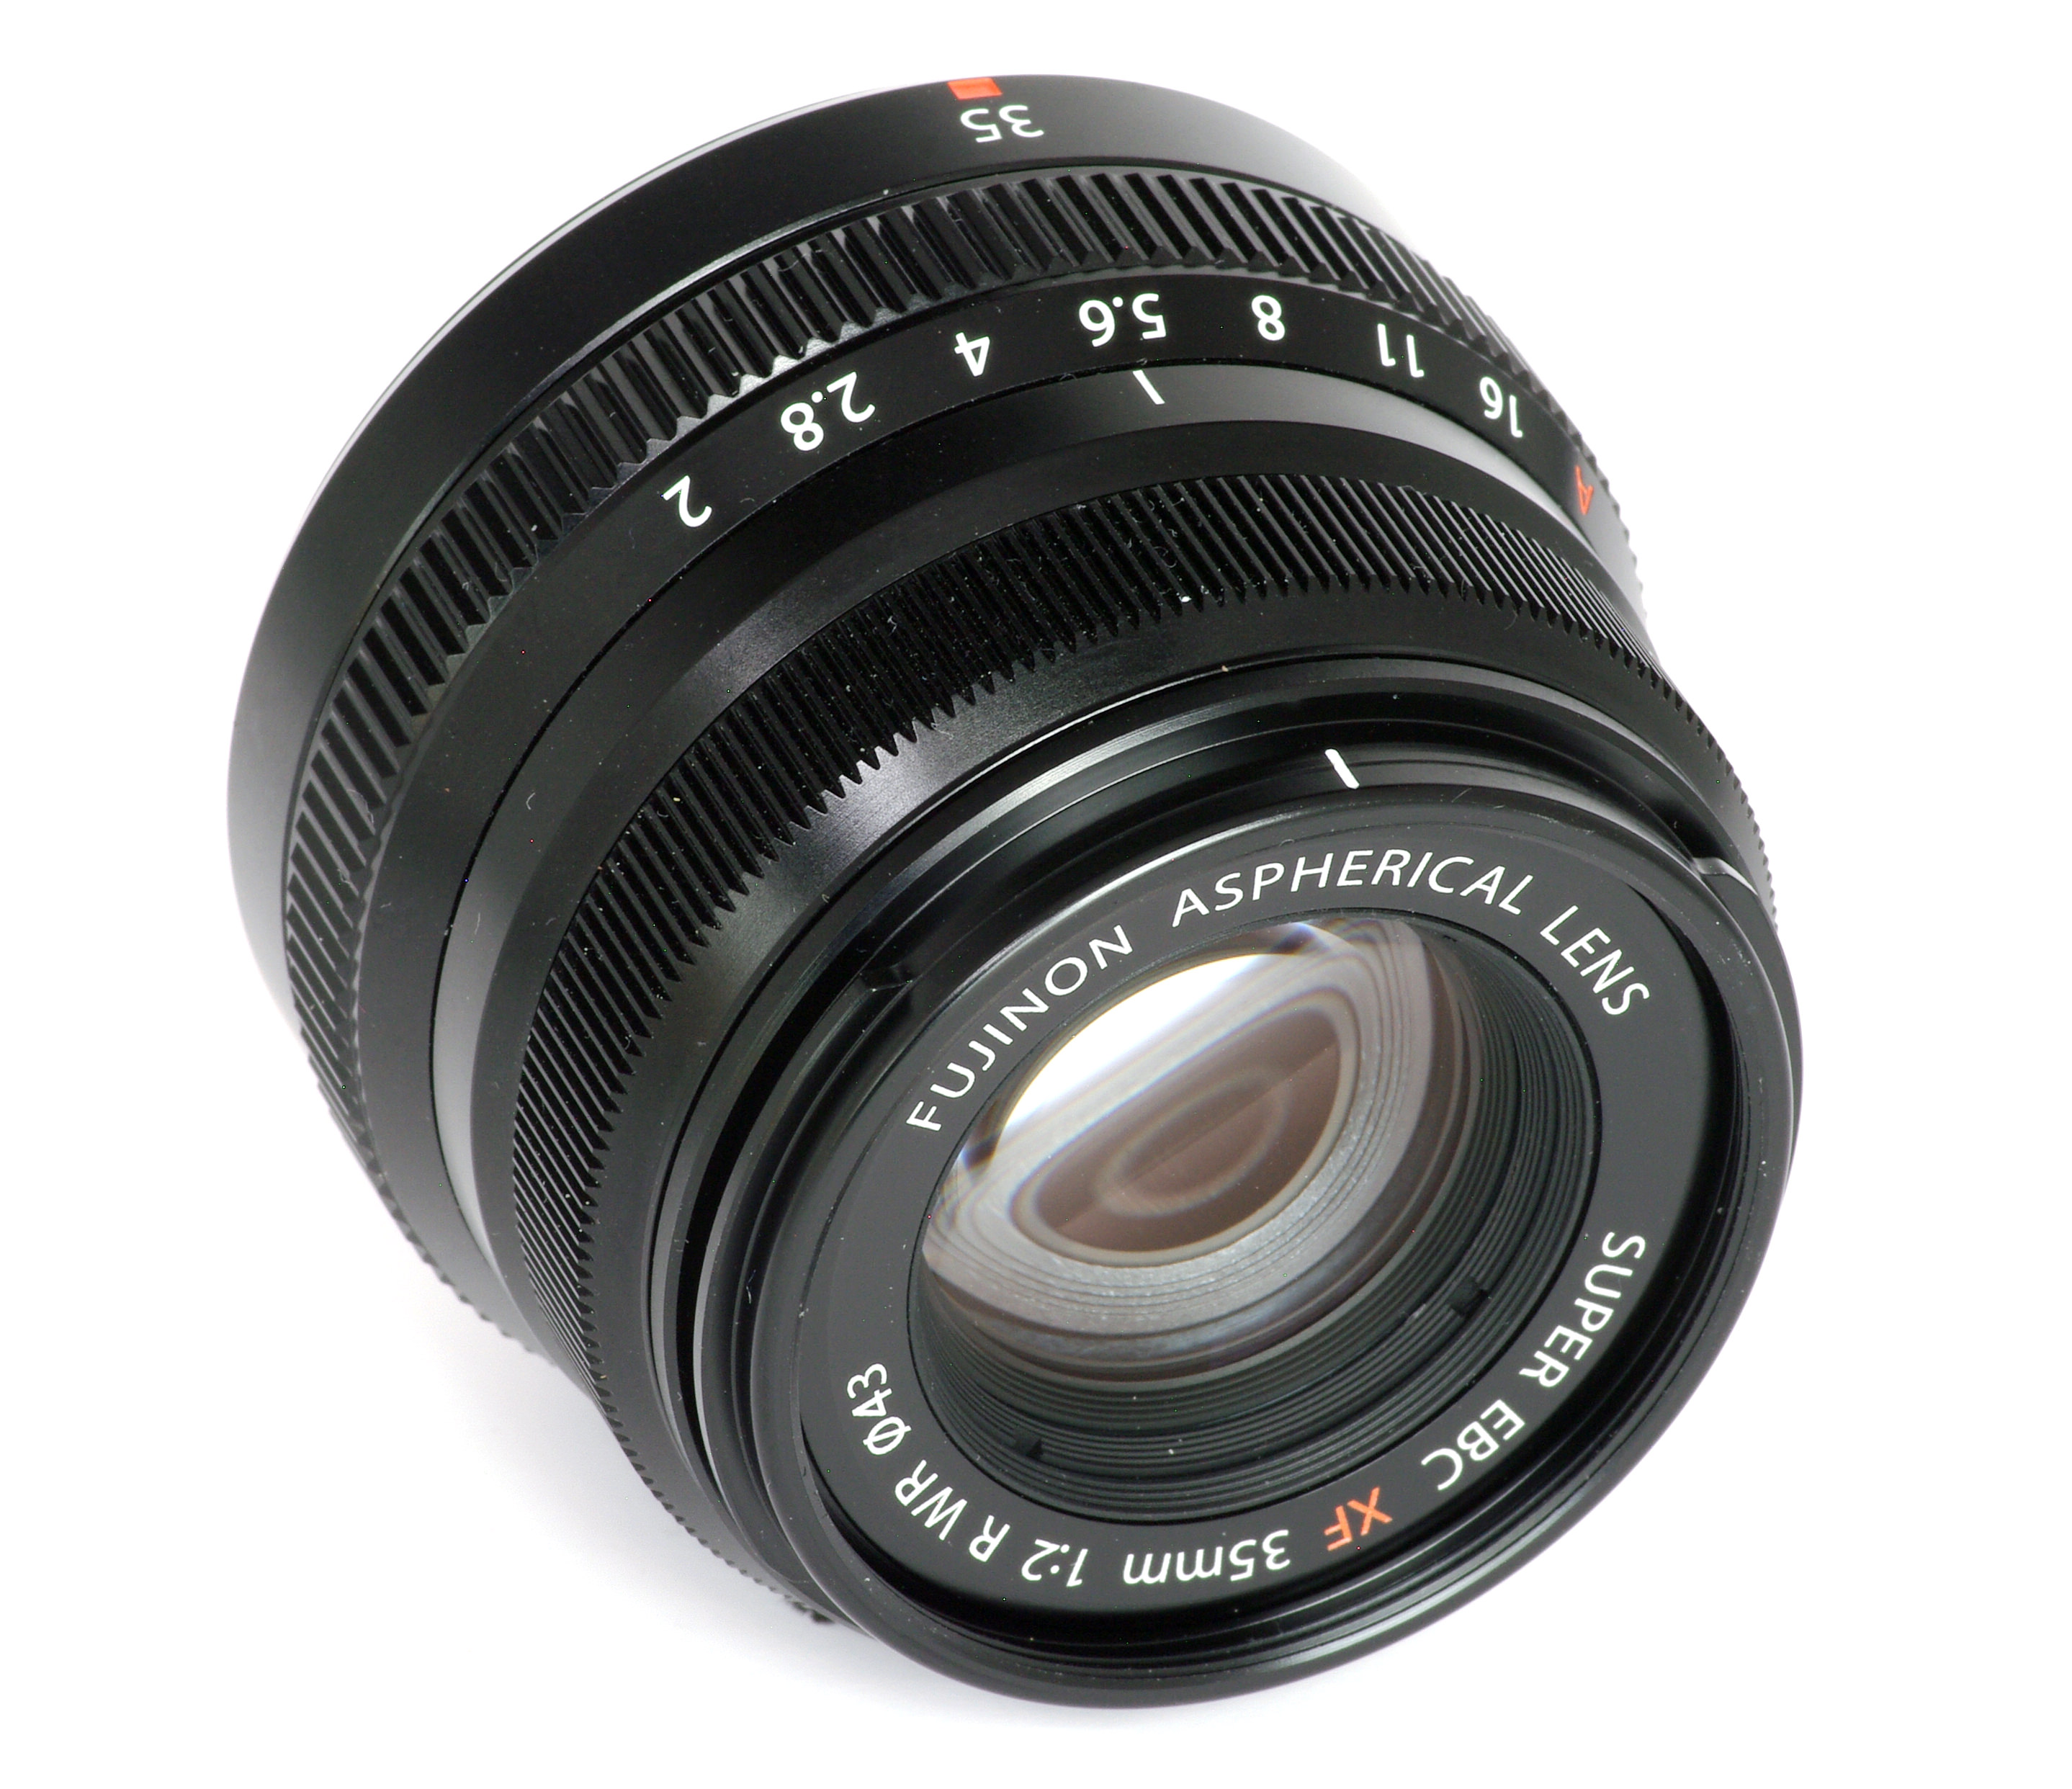 Fujifilm Fujinon XF 35mm f/2 R WR Lens Review